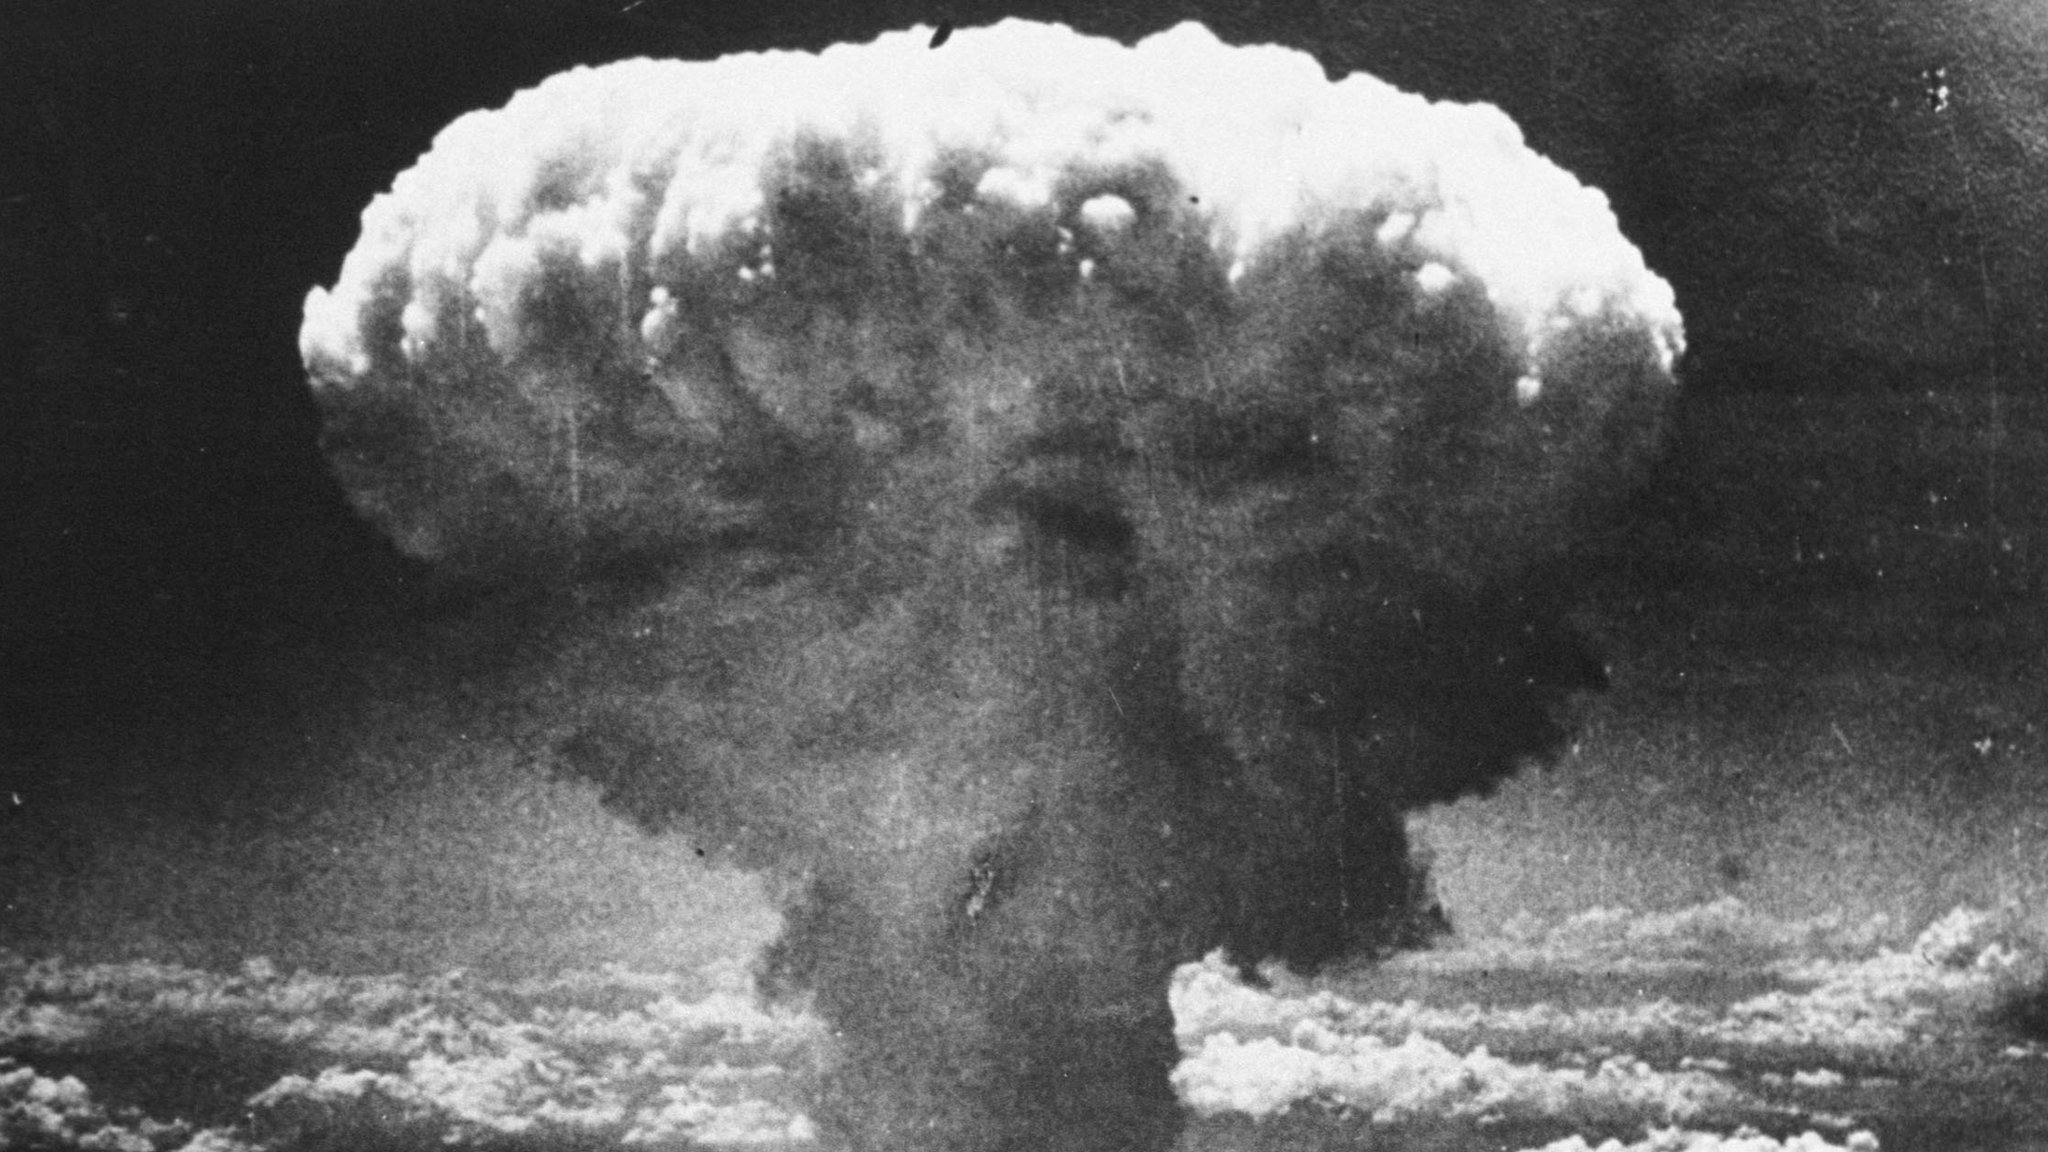 Nagasaki: 76 yıl önce savaşta kullanılan son atom bombasının hikâyesi - BBC  News Türkçe